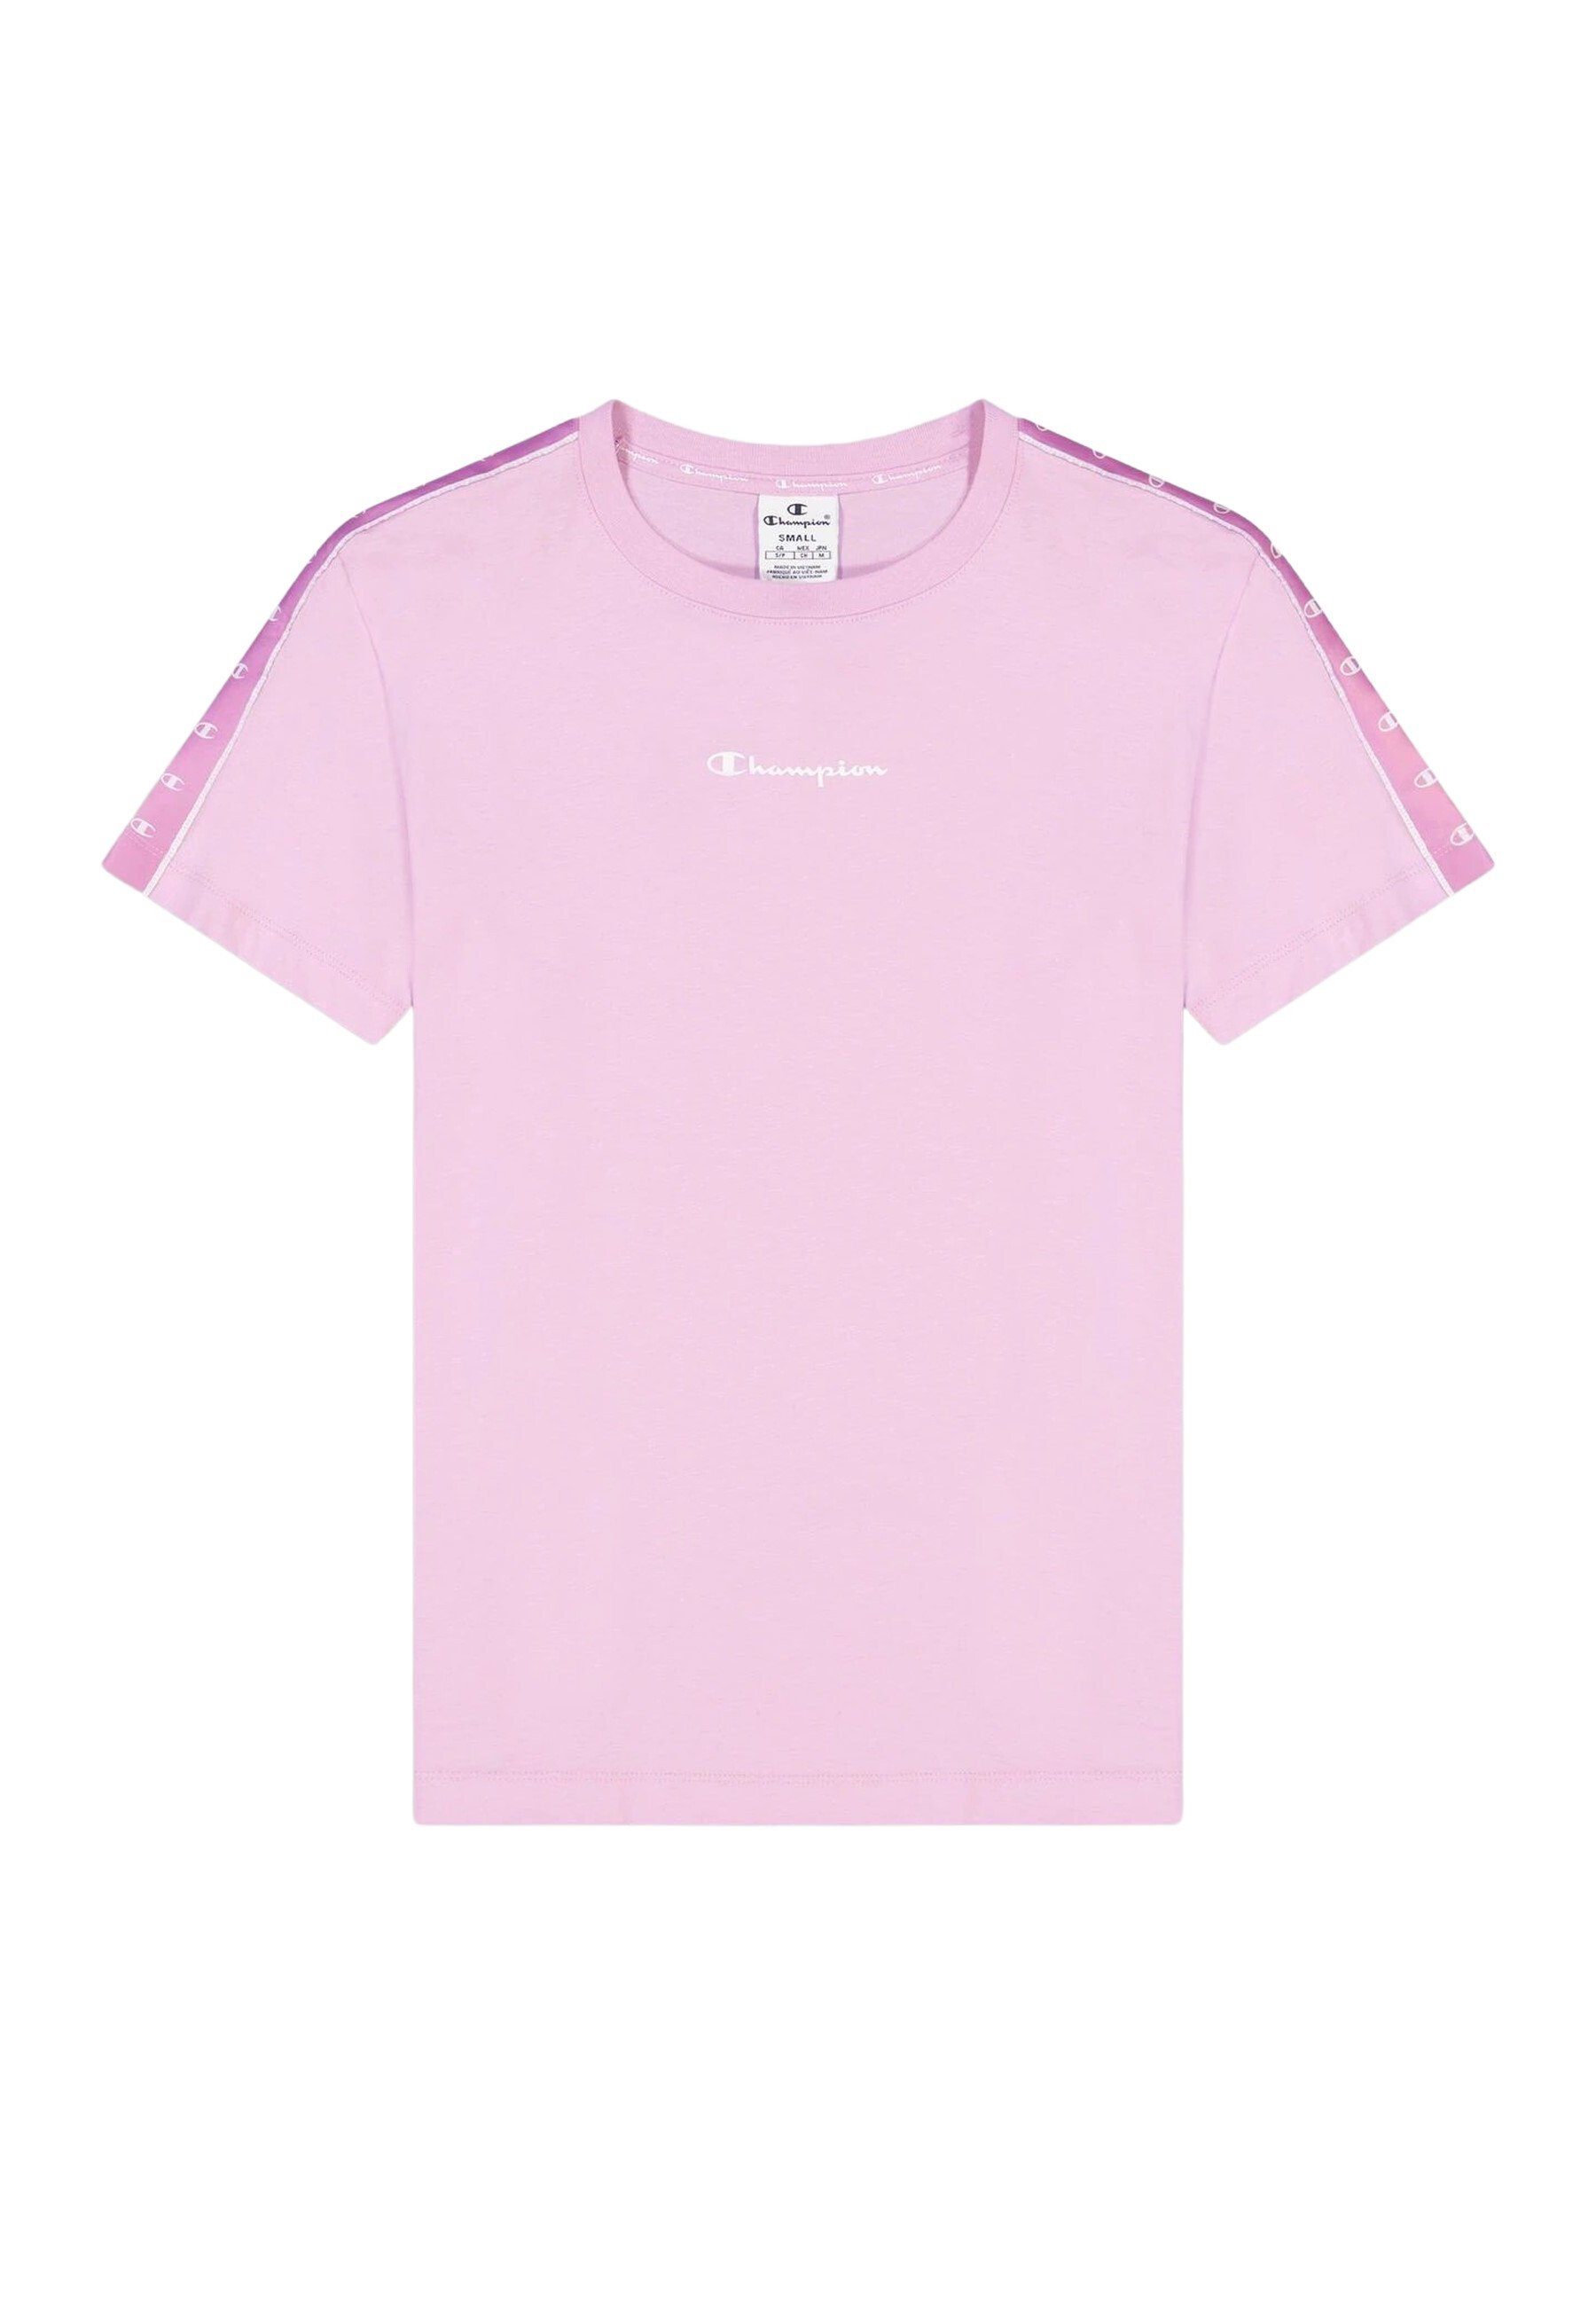 Champion T-Shirt Shirt Baumwolle aus Rundhals-T-Shirt pink mit